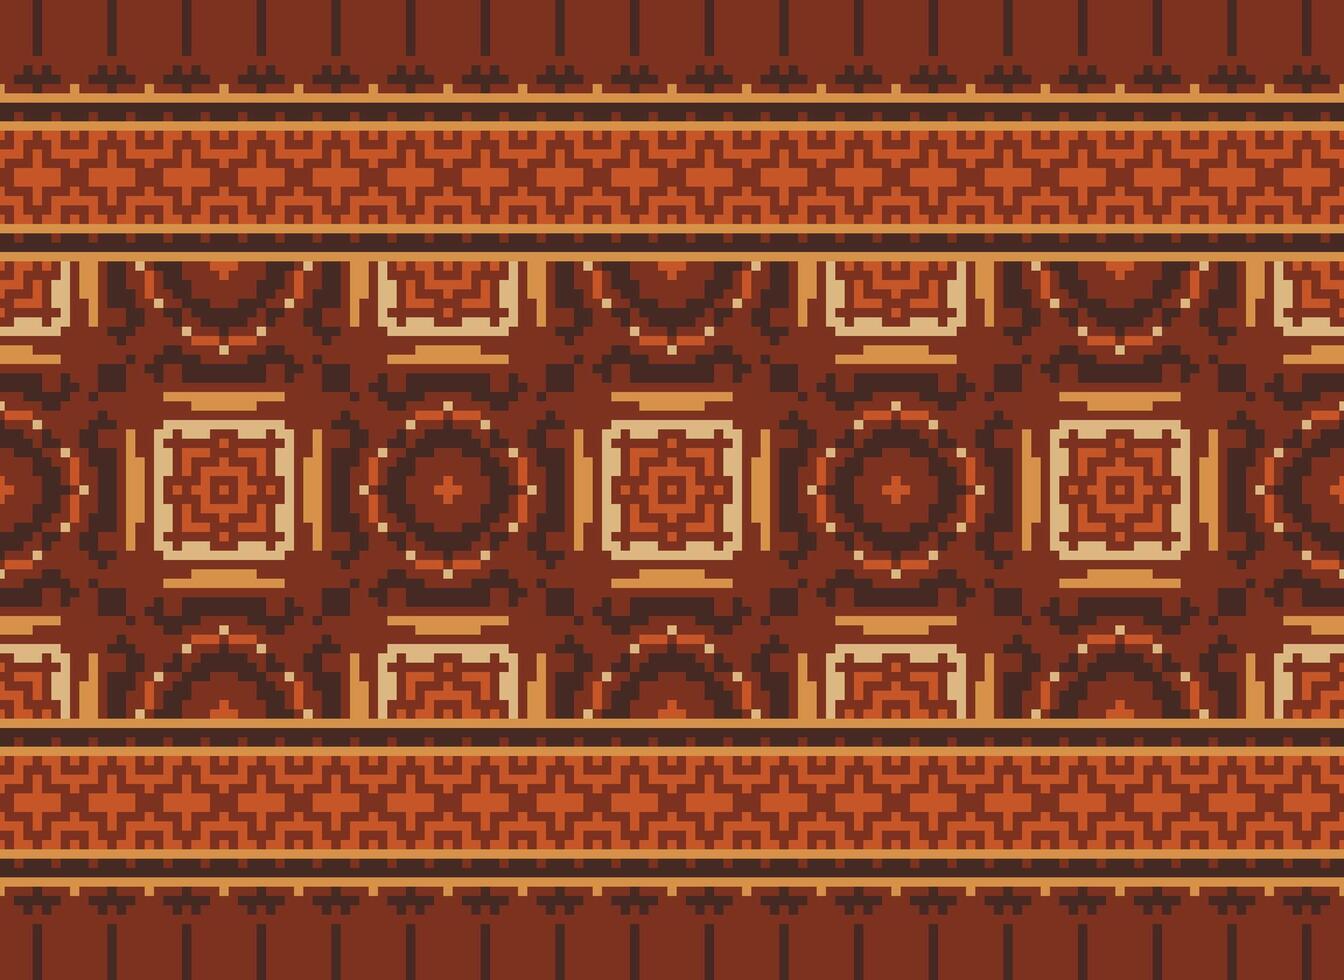 årgångar korsa sy traditionell etnisk mönster paisley blomma ikat bakgrund abstrakt aztec afrikansk indonesiska indisk sömlös mönster för tyg skriva ut trasa klänning matta gardiner och sarong vektor